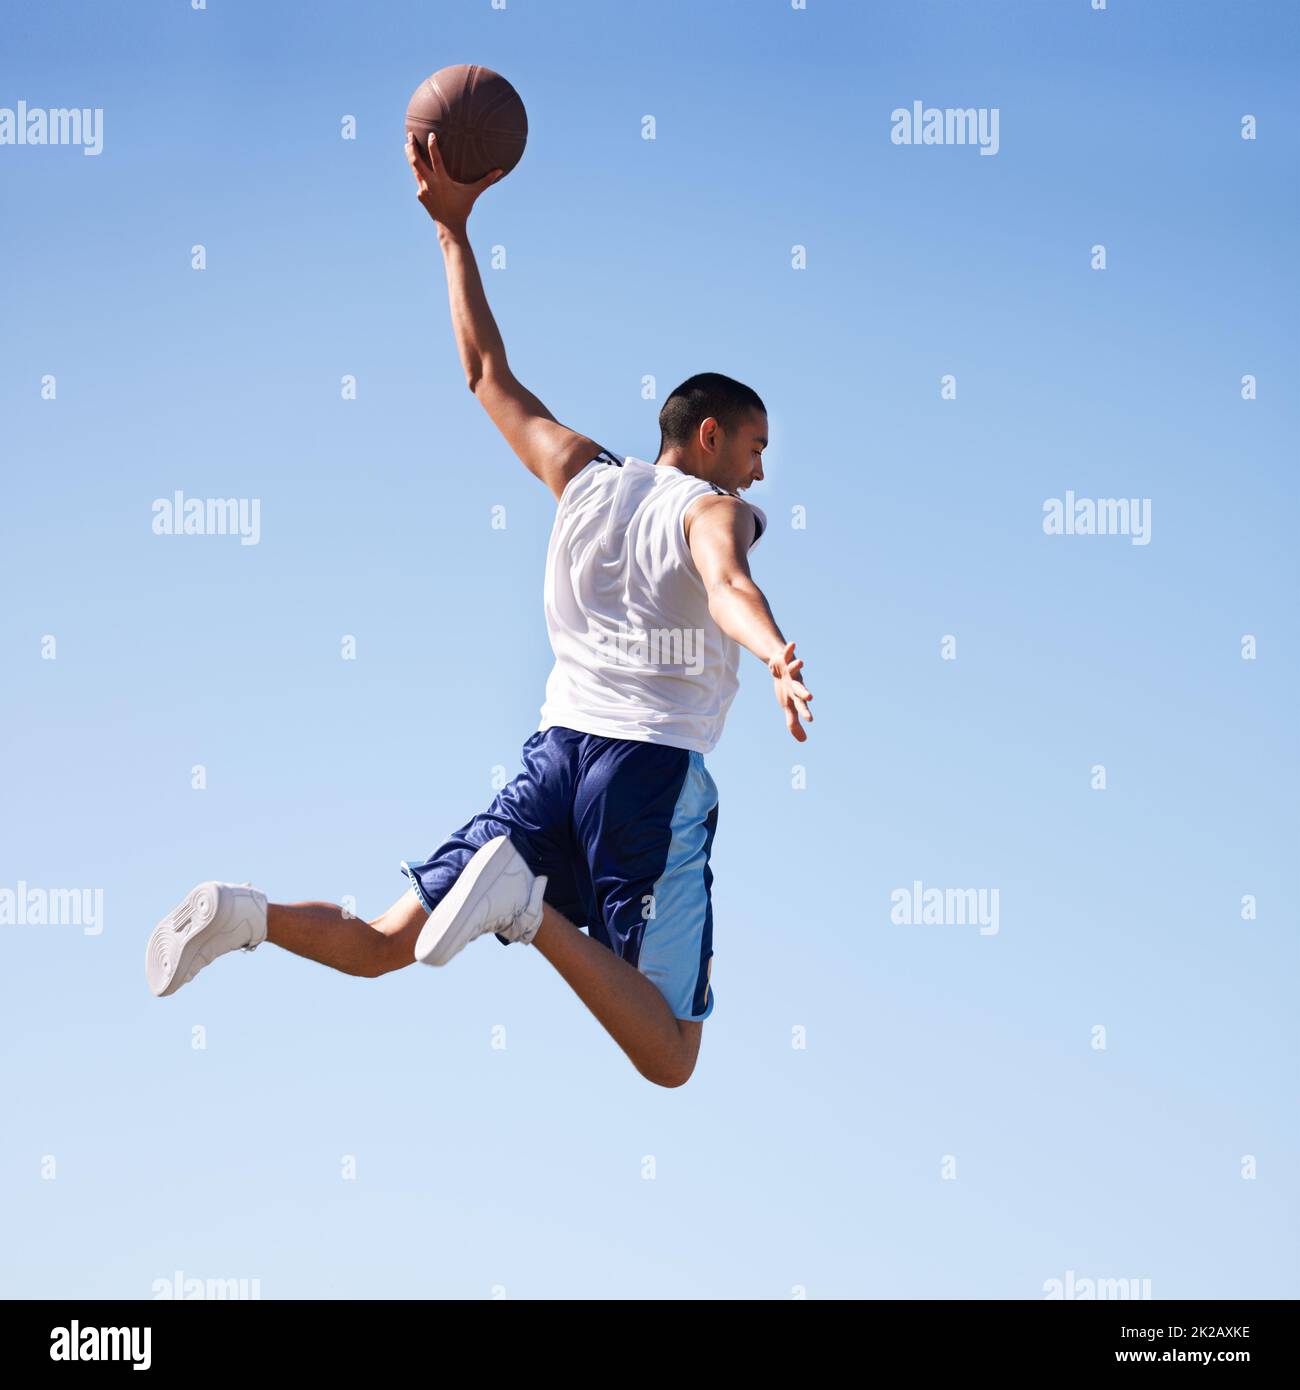 Sfidare la gravità. Un giovane atleta che salta in volo. Foto Stock